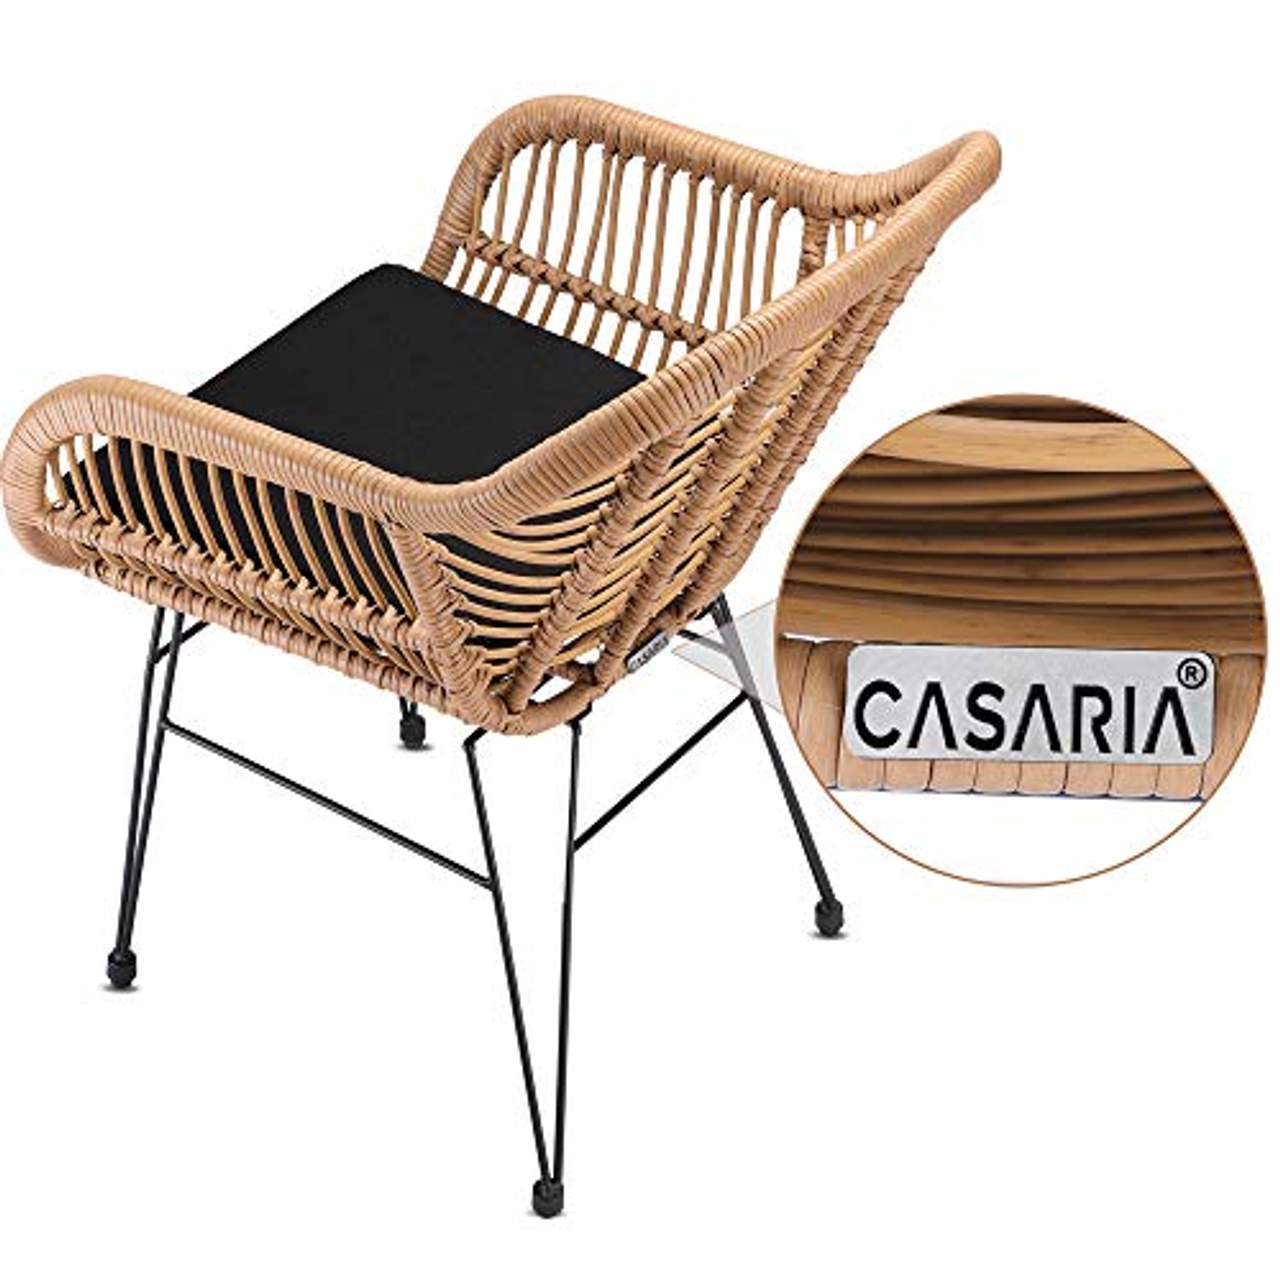 Casaria 3 TLG Balkonset Beistelltisch 2 Lounge Sessel Indoor Outdoor